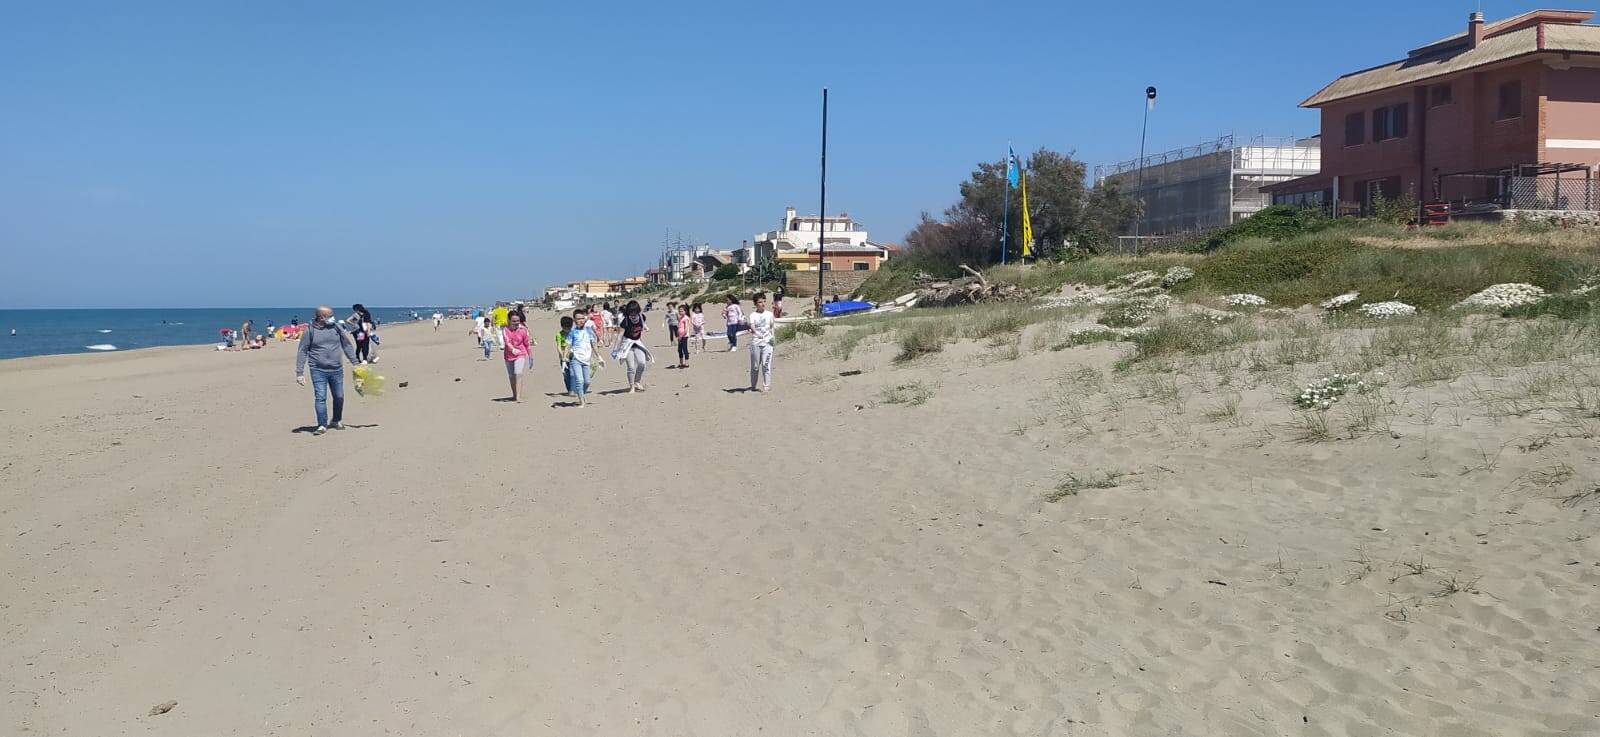 Il litorale di Torvaianica ripulito dai rifiuti: oltre 100 volontari in azione